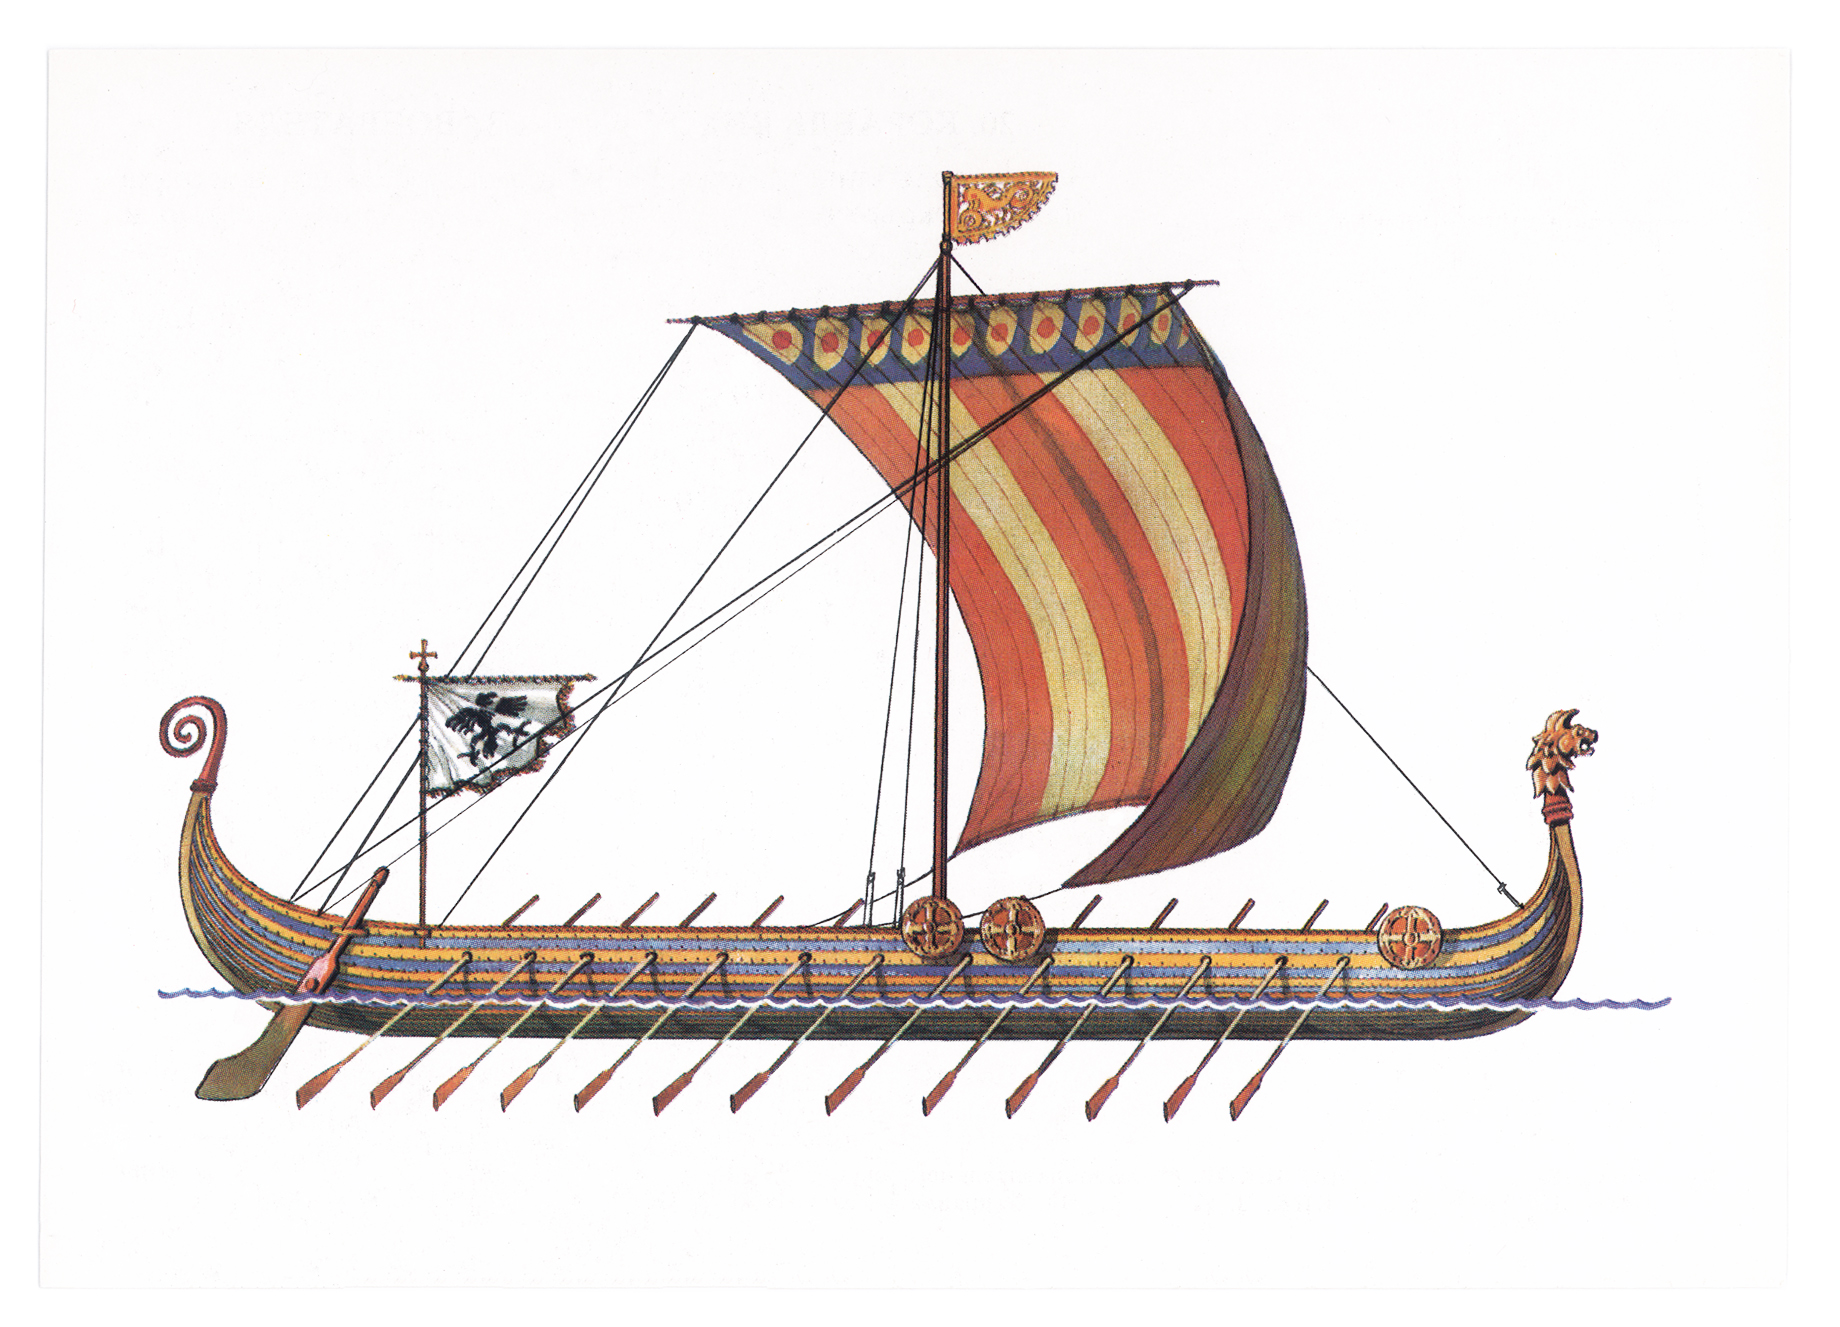 Тема ладья. Корабль викингов Drakkar. Ладья викингов дракар. Корабль викингов Драккар 10 век. Корабли Вильгельма завоевателя.